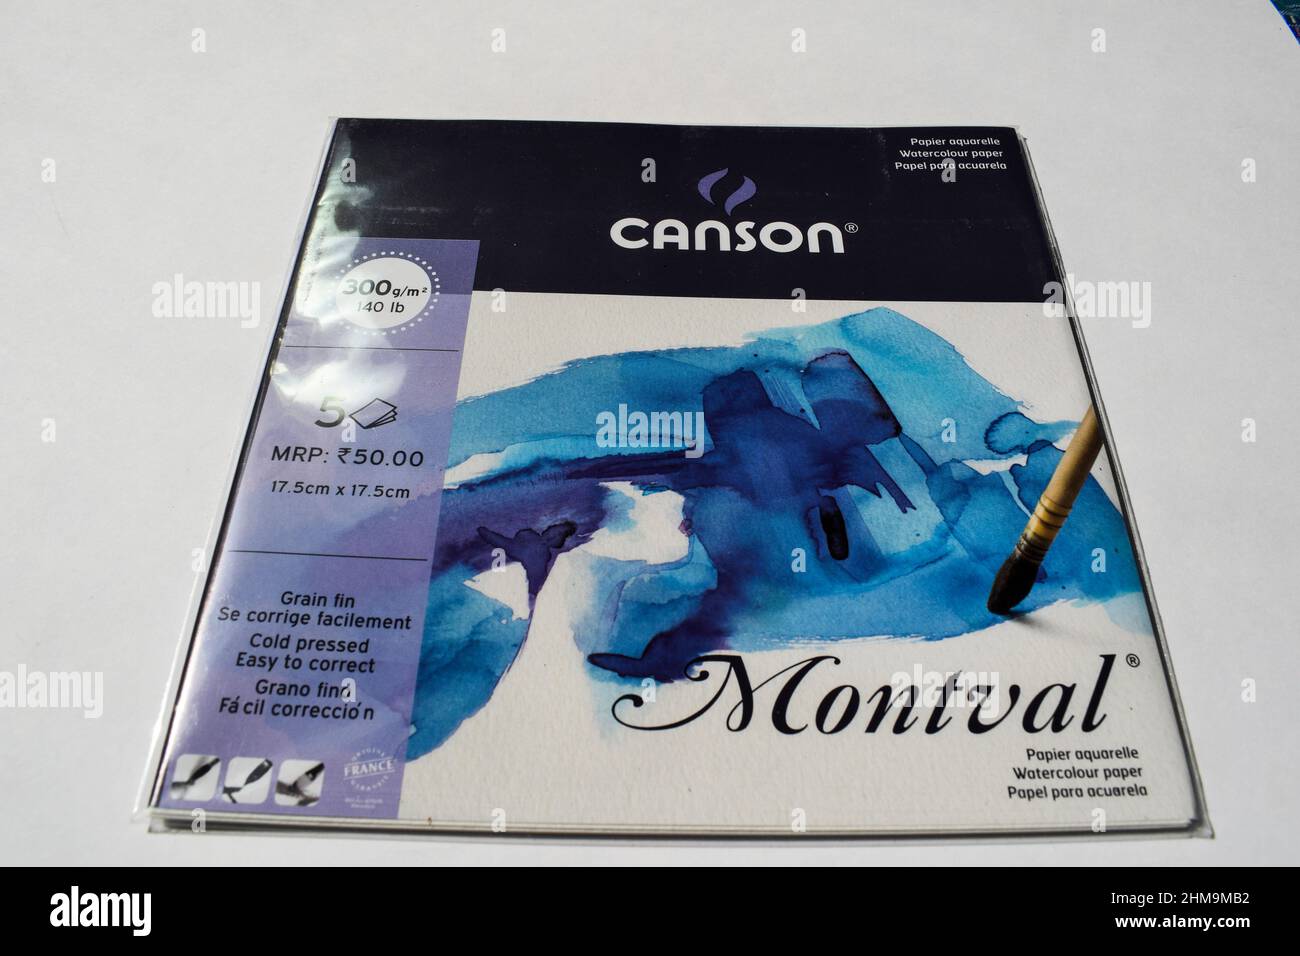 La marque Canson Montaval aquarelle 300 g/m2 fabriquée en France, commercialisée en Inde, gratuite avec la vue avant de la société doms Stationary Banque D'Images